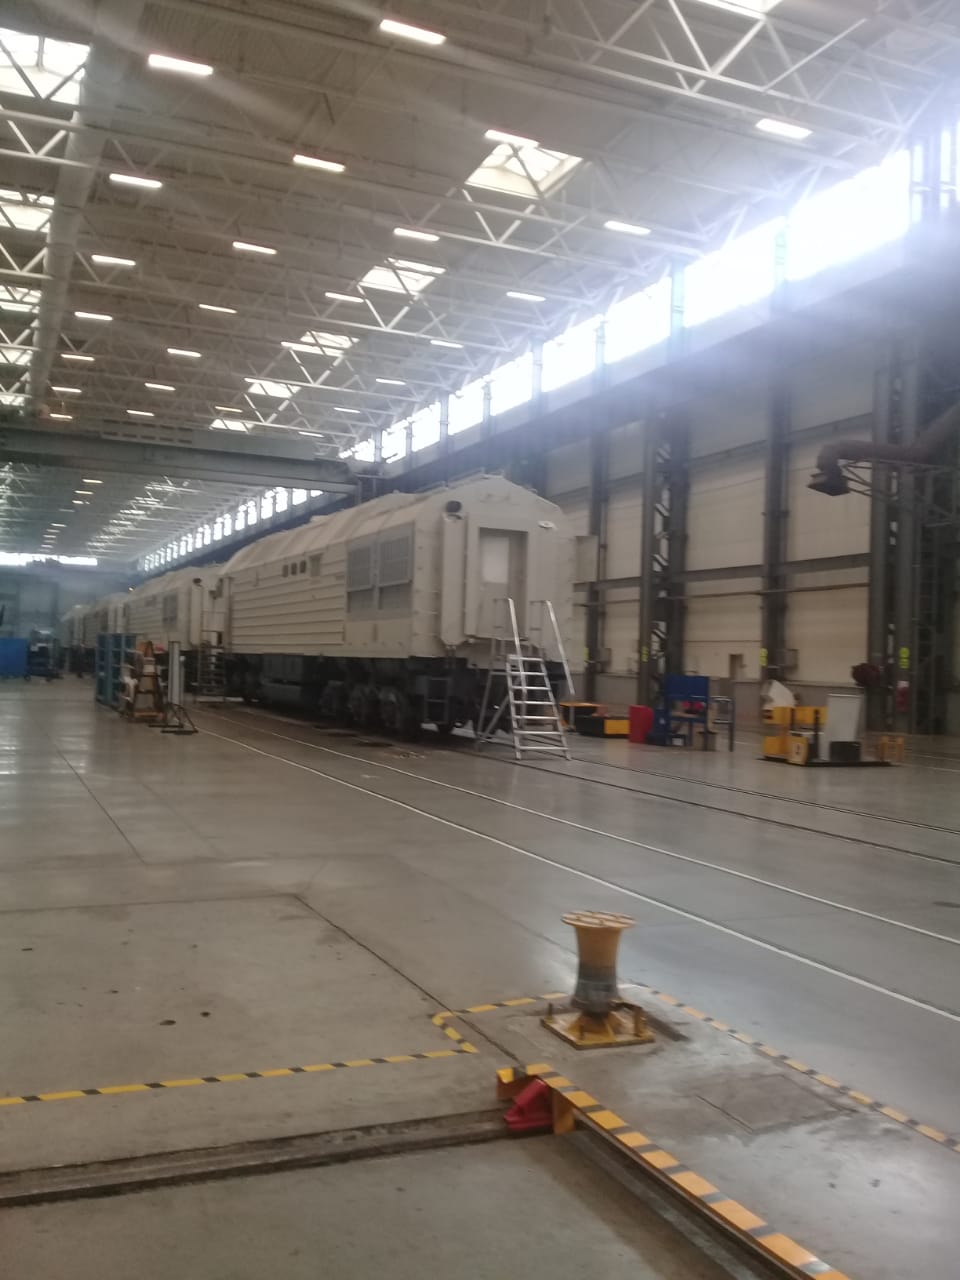  جولة لليوم السابع بمصنع جرارات السكة الحديد الروسى (8)